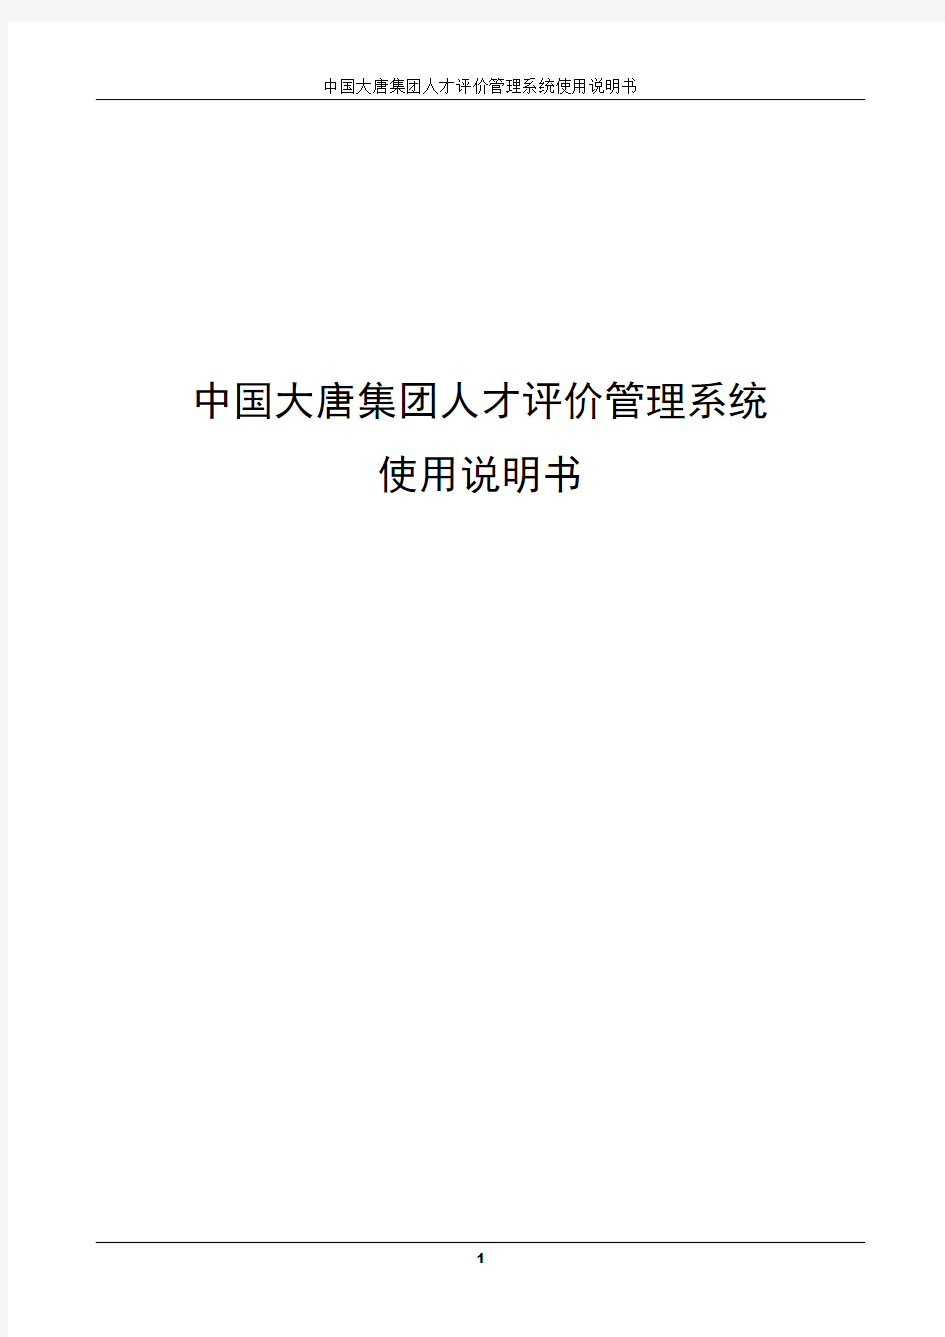 中国大唐集团人才评价管理系统使用说明书2010